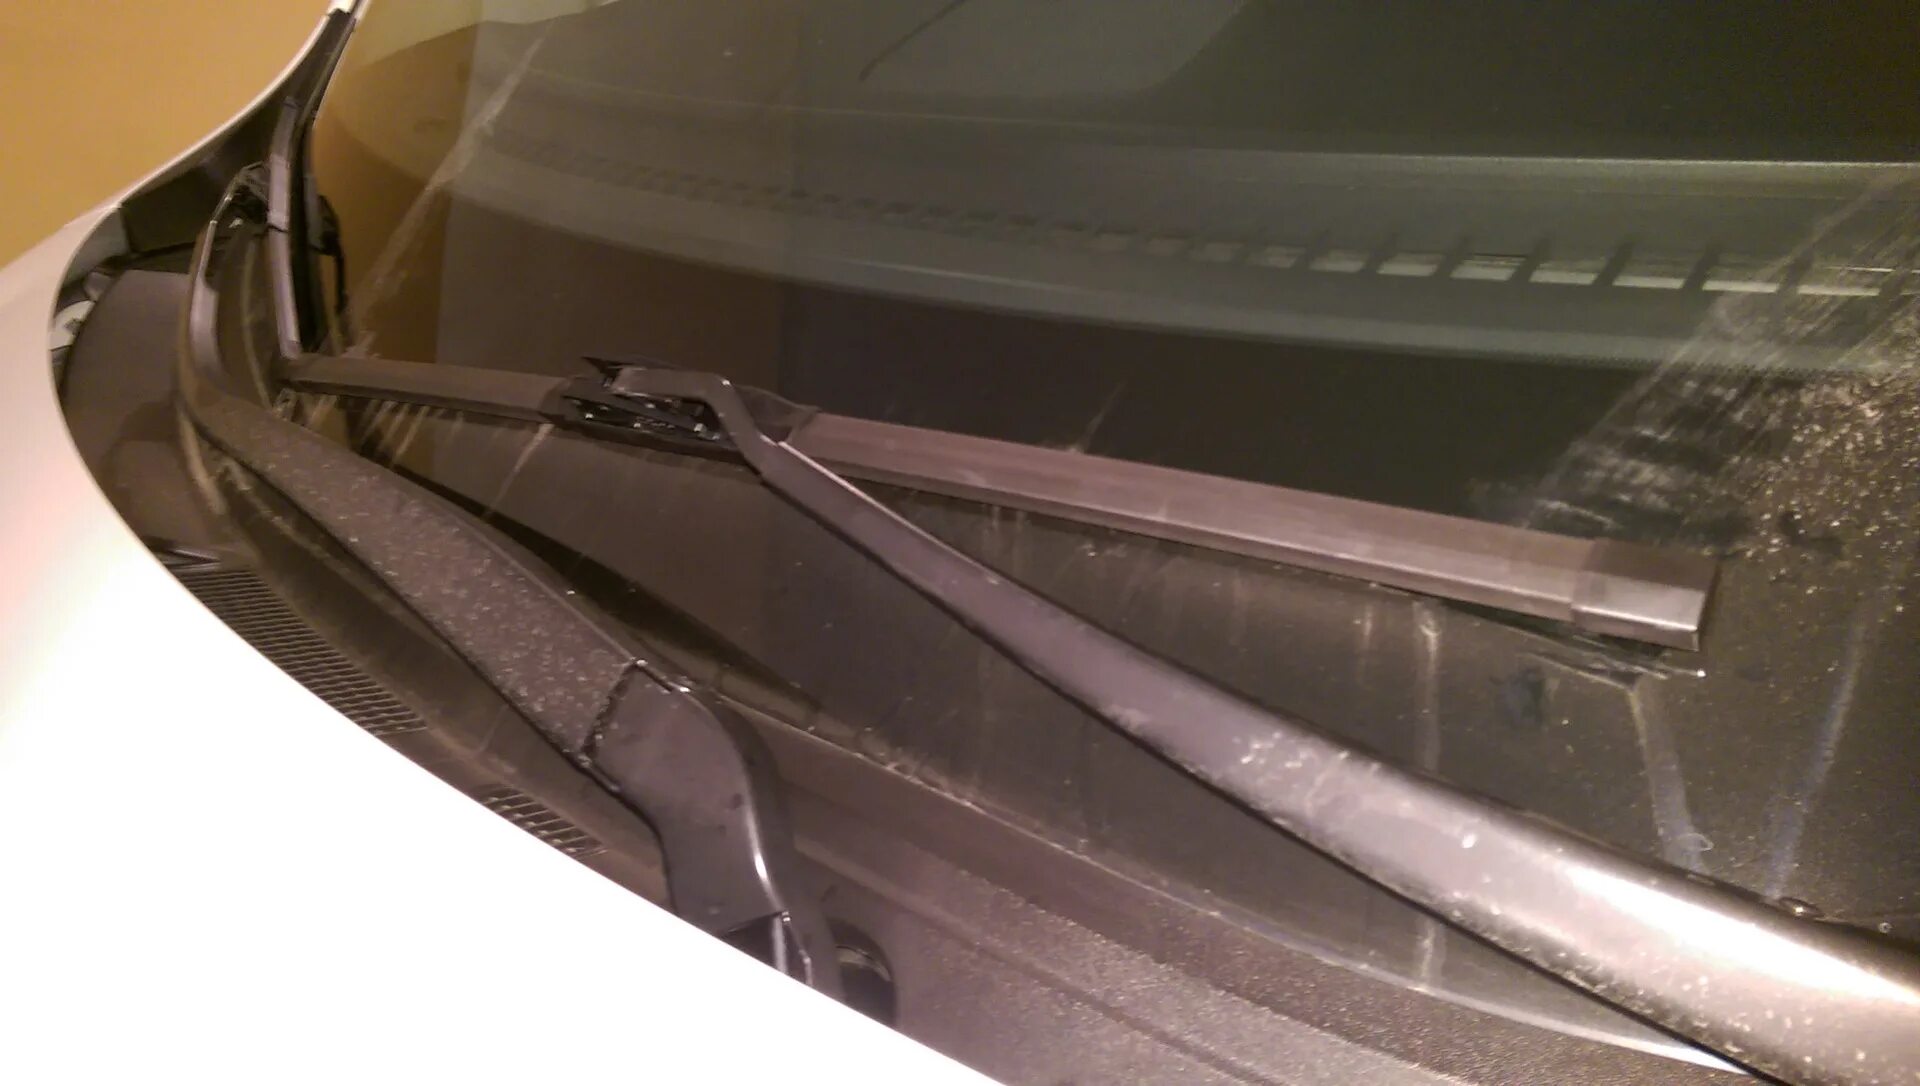 Щетки стеклоочистителя Mazda CX-5. Щетки стеклоочистителя Мазда СХ-5. Щетки очистителя Мазда сх5. Дворник лобового стекла Мазда СХ-5. Щетки на мазда сх5